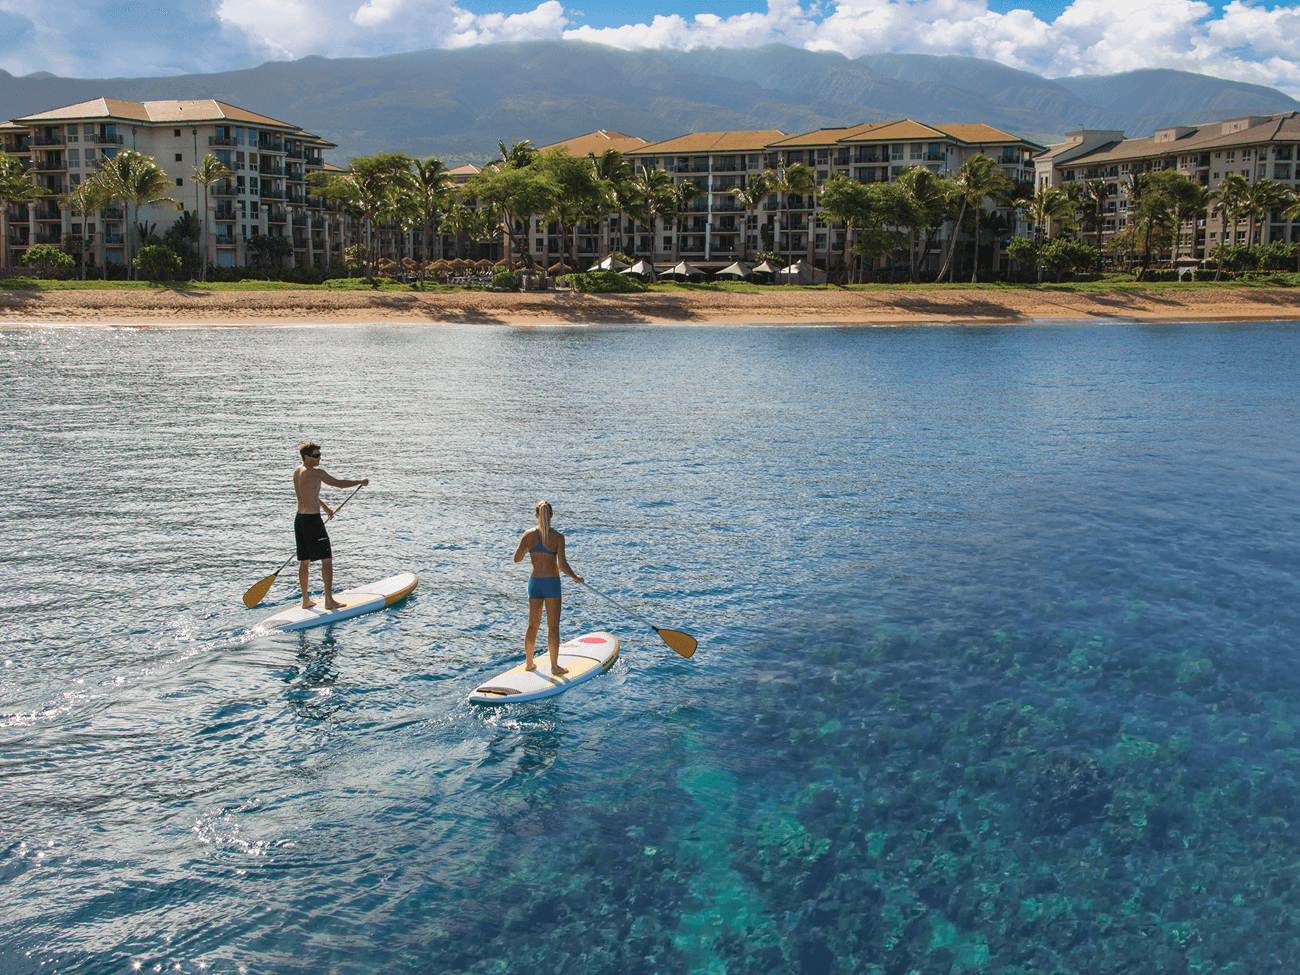 Image of The Westin Kā‘anapali Ocean Resort Villas in Maui.